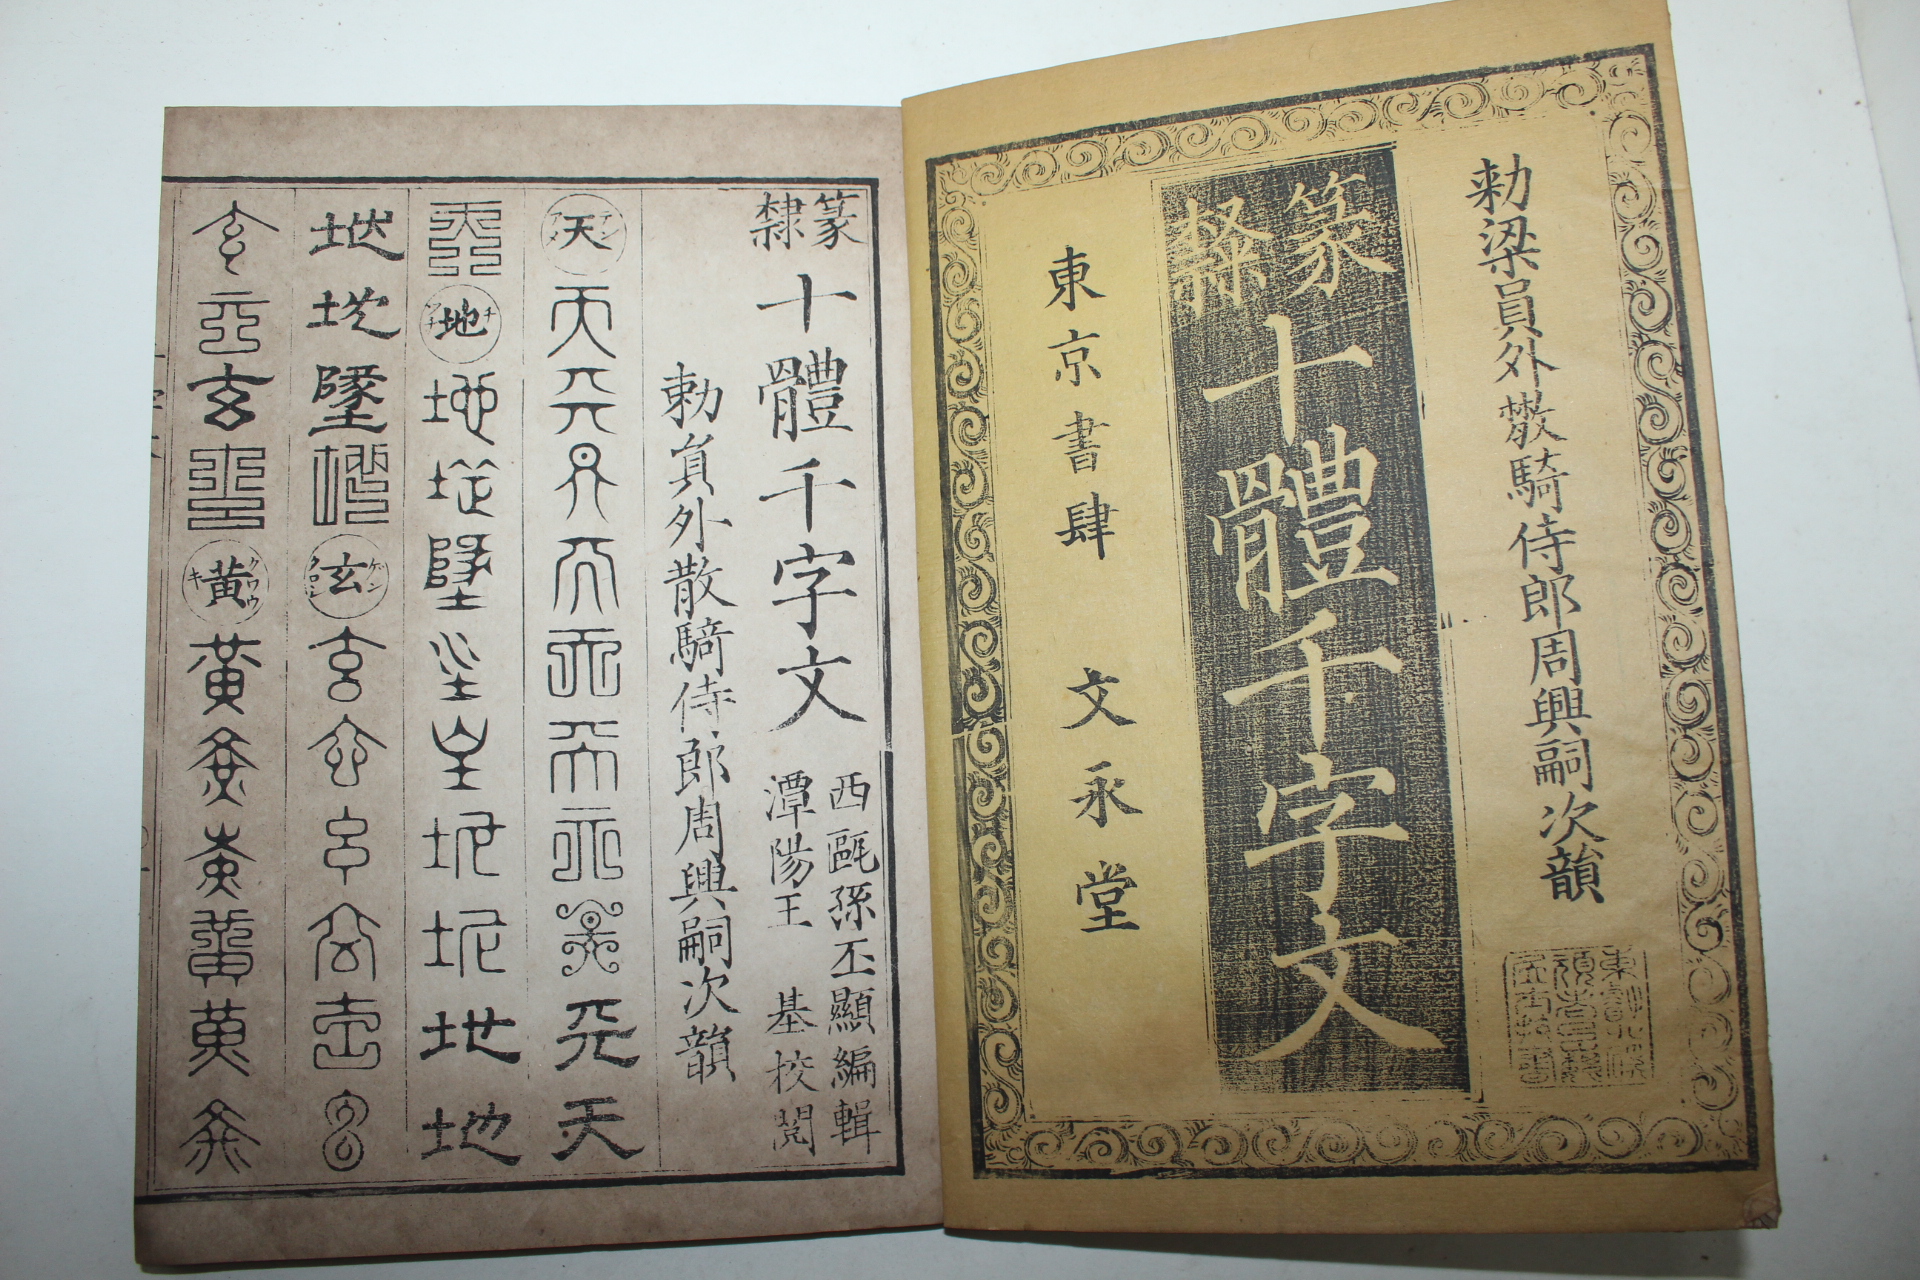 1901년 일본간행 십체천자문(十體千字文) 1책완질